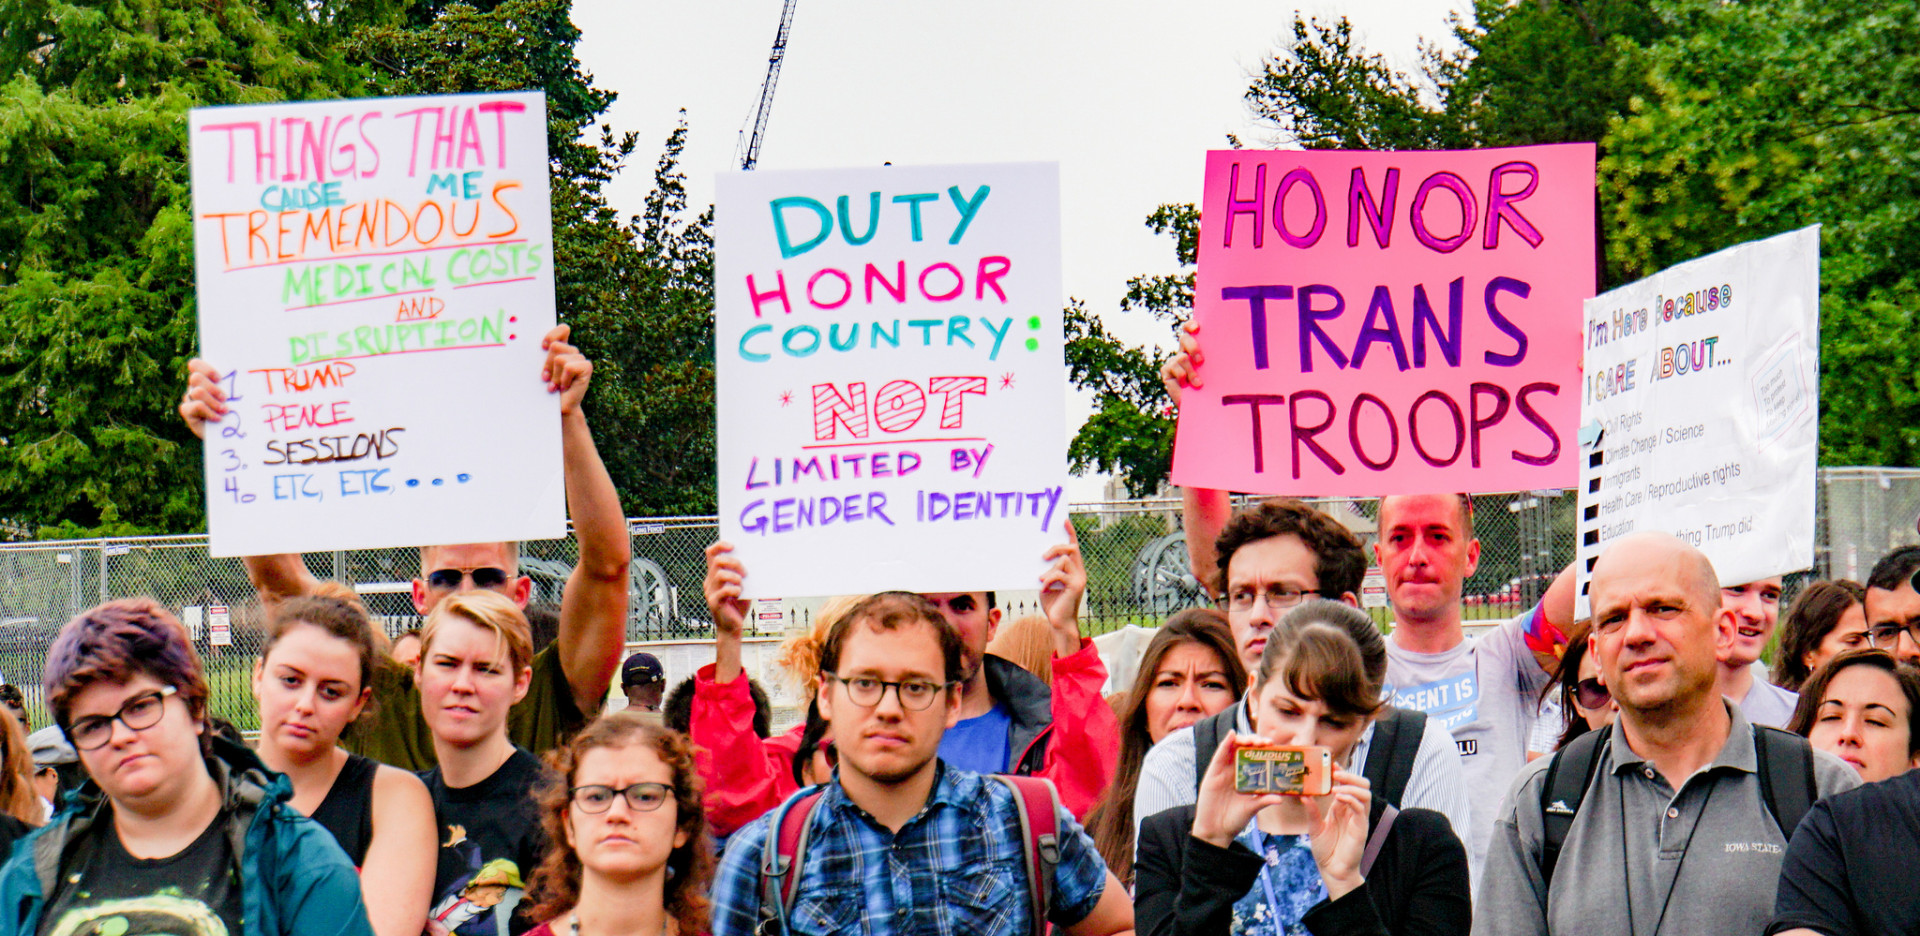 Alkotmányos, hogy Trump kitiltotta a transzneműeket a katonaságból